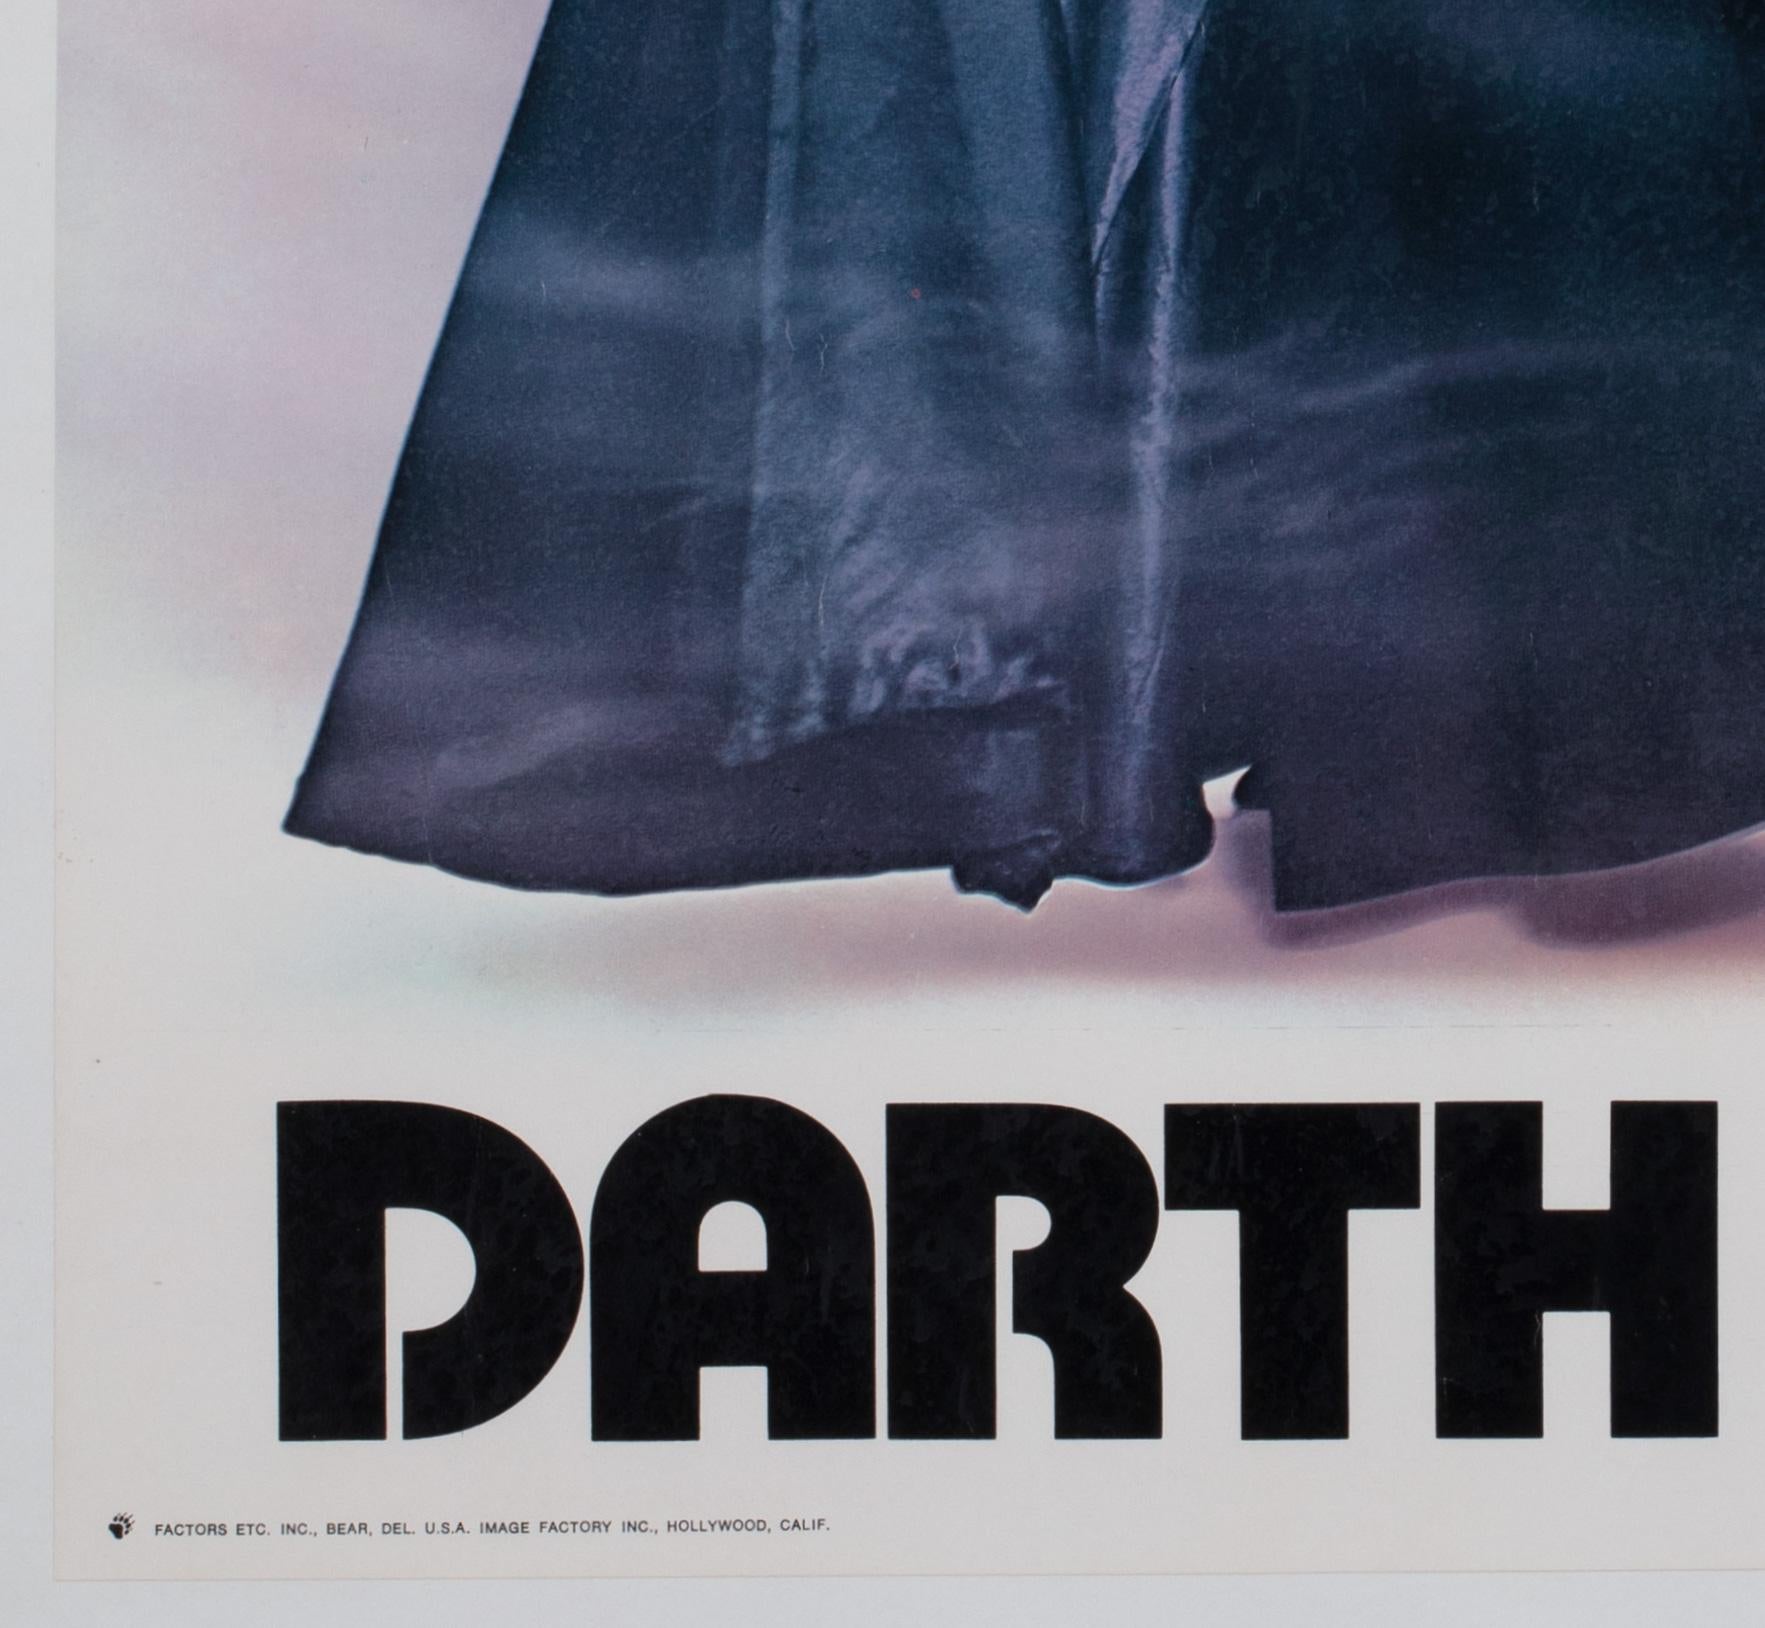 Star Wars Darth Vader 1977 Vintage Factor Inc Commercial Poster, Star Wars, Star Wars im Angebot 1